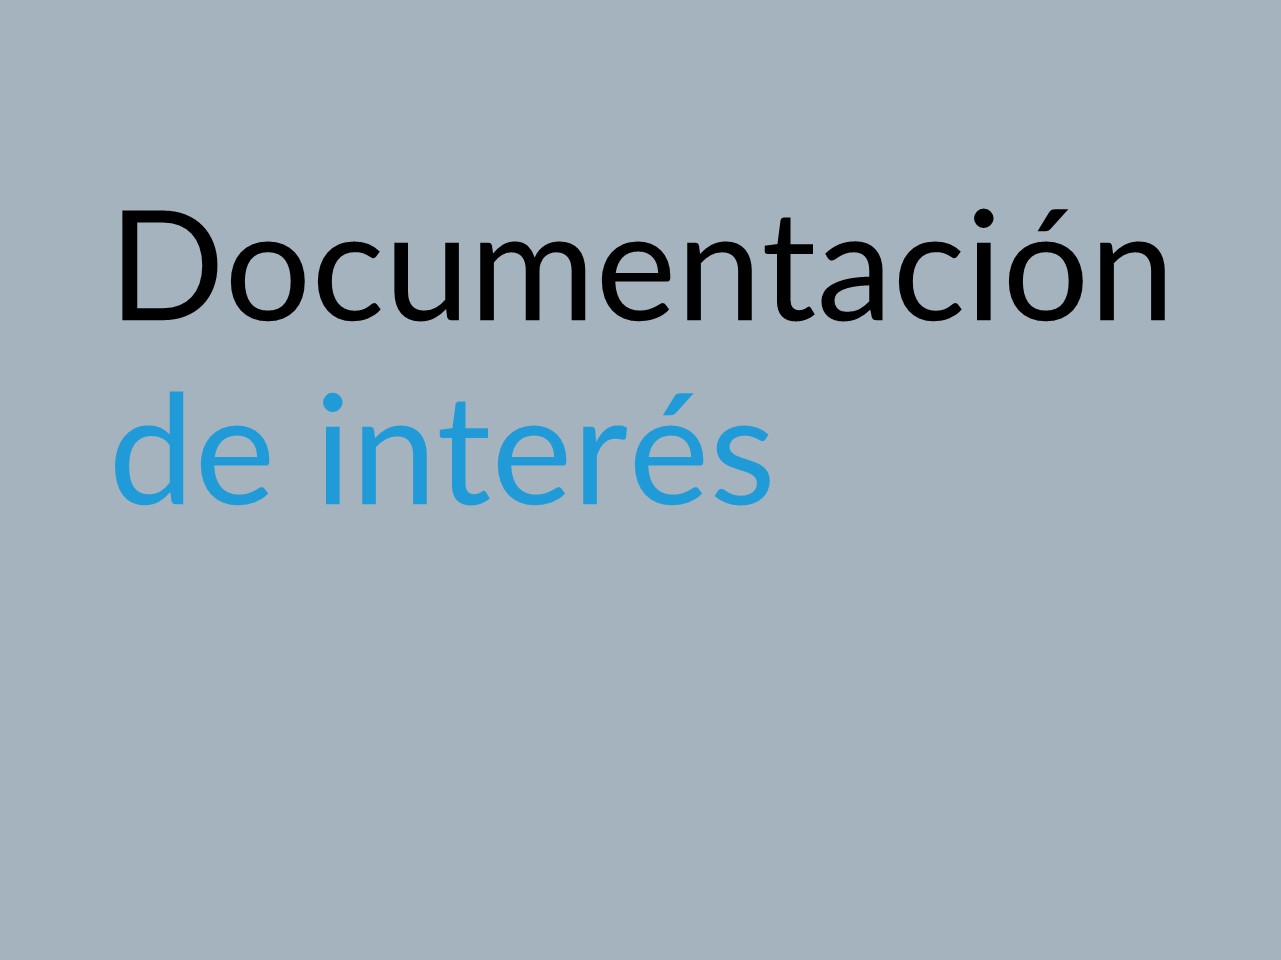 Documentos de trabajo y consulta - Enlace a la página interna